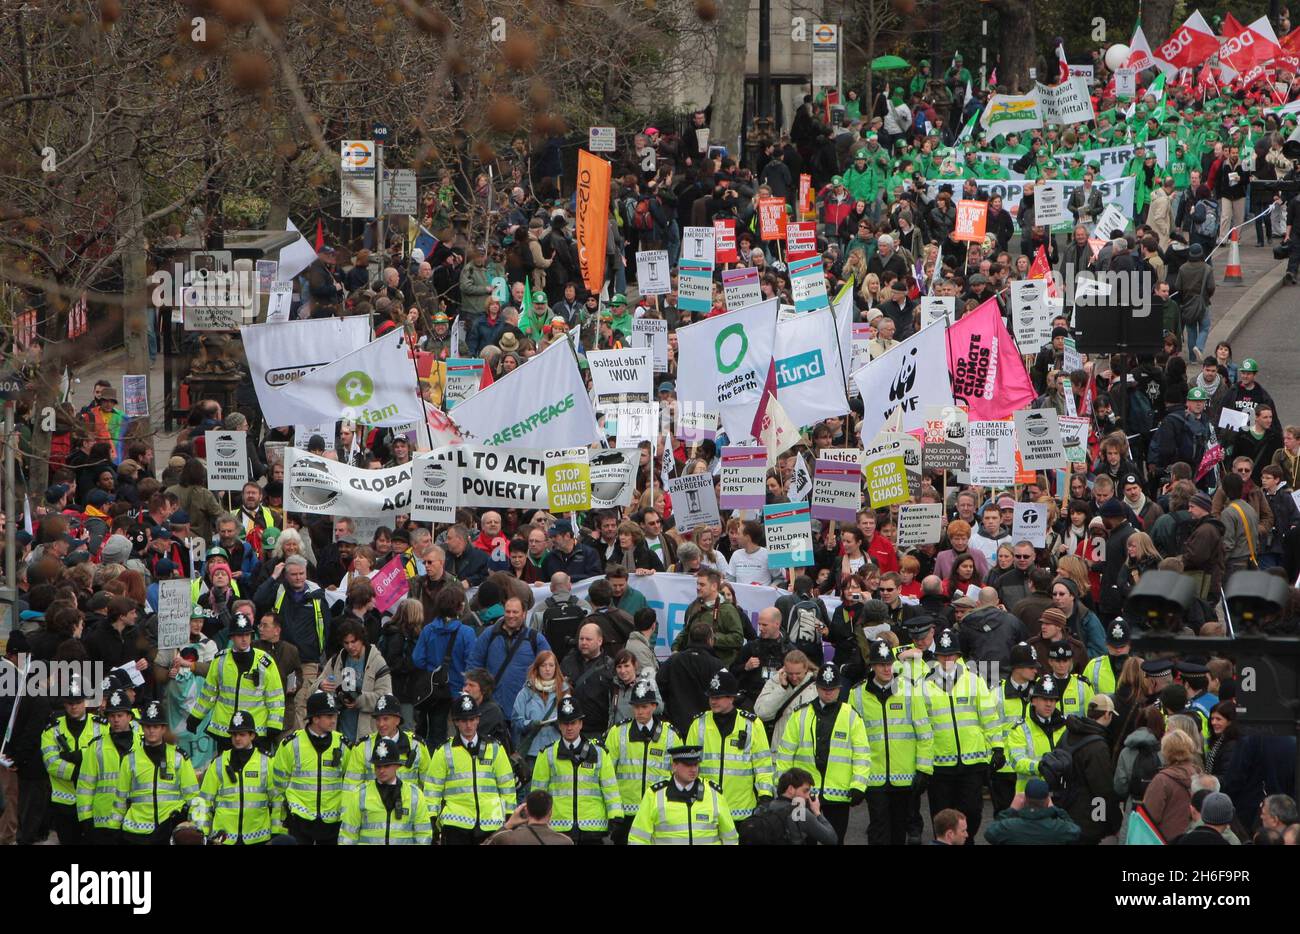 Tausende Demonstranten versammelten sich heute in London im Regen zu einem riesigen marsch für Ã&#65533;Jobs, Justiz und climateÃ&#65533; in der ersten einer Woche von Demonstrationen vor dem G20-Gipfel. An der Put People First march beteiligte sich ein Bündnis von 150 Gruppen, darunter Gewerkschaften, Wohltätigkeitsorganisationen, Umweltaktivisten und Glaubensorganisationen. Es wird erwartet, dass sich Aktivisten gegen Banker und städtische Finanziers richten, die sie für die globale Rezession verantwortlich machen. Stockfoto